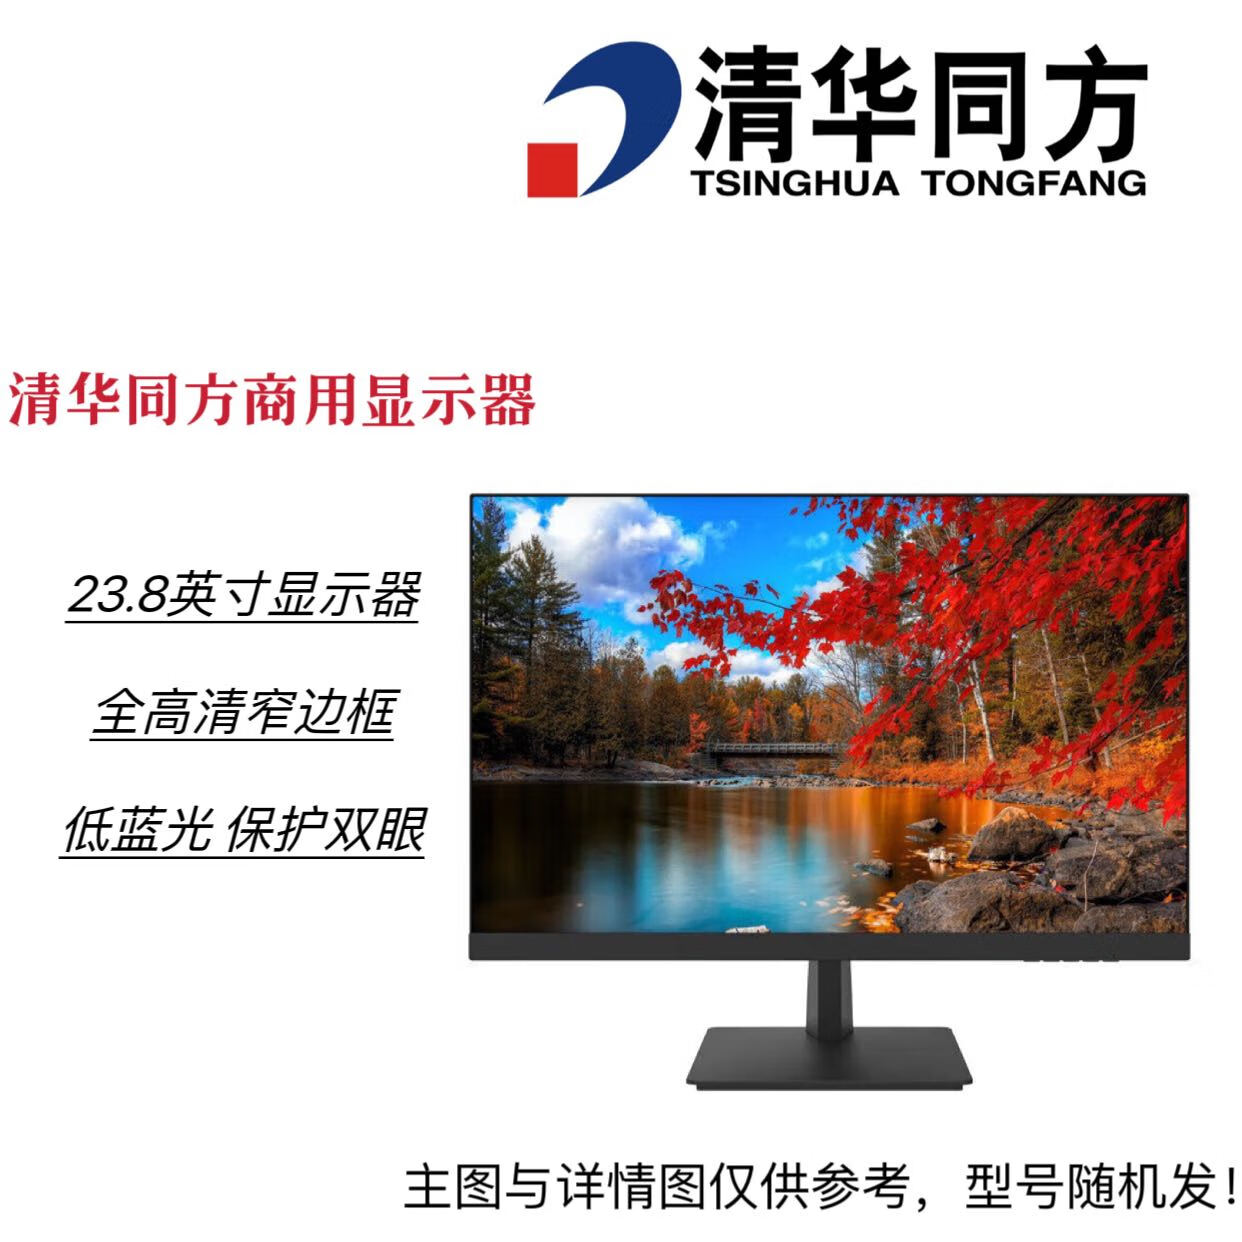 清华同方 TF2416商用办公显示器 23.8英寸 高清屏幕 莱茵低蓝光护眼认证 